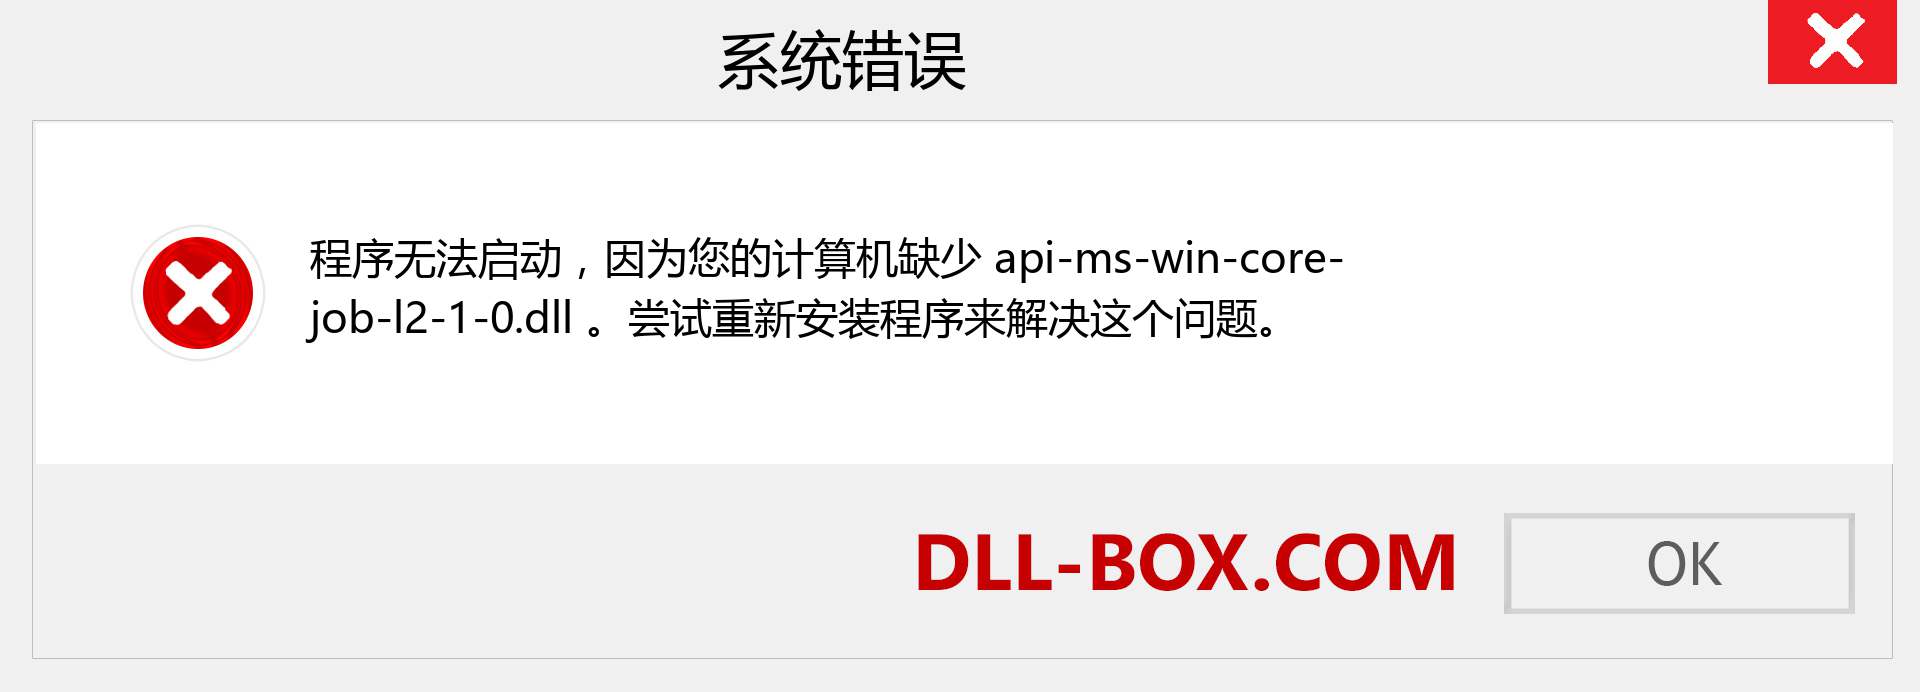 api-ms-win-core-job-l2-1-0.dll 文件丢失？。 适用于 Windows 7、8、10 的下载 - 修复 Windows、照片、图像上的 api-ms-win-core-job-l2-1-0 dll 丢失错误